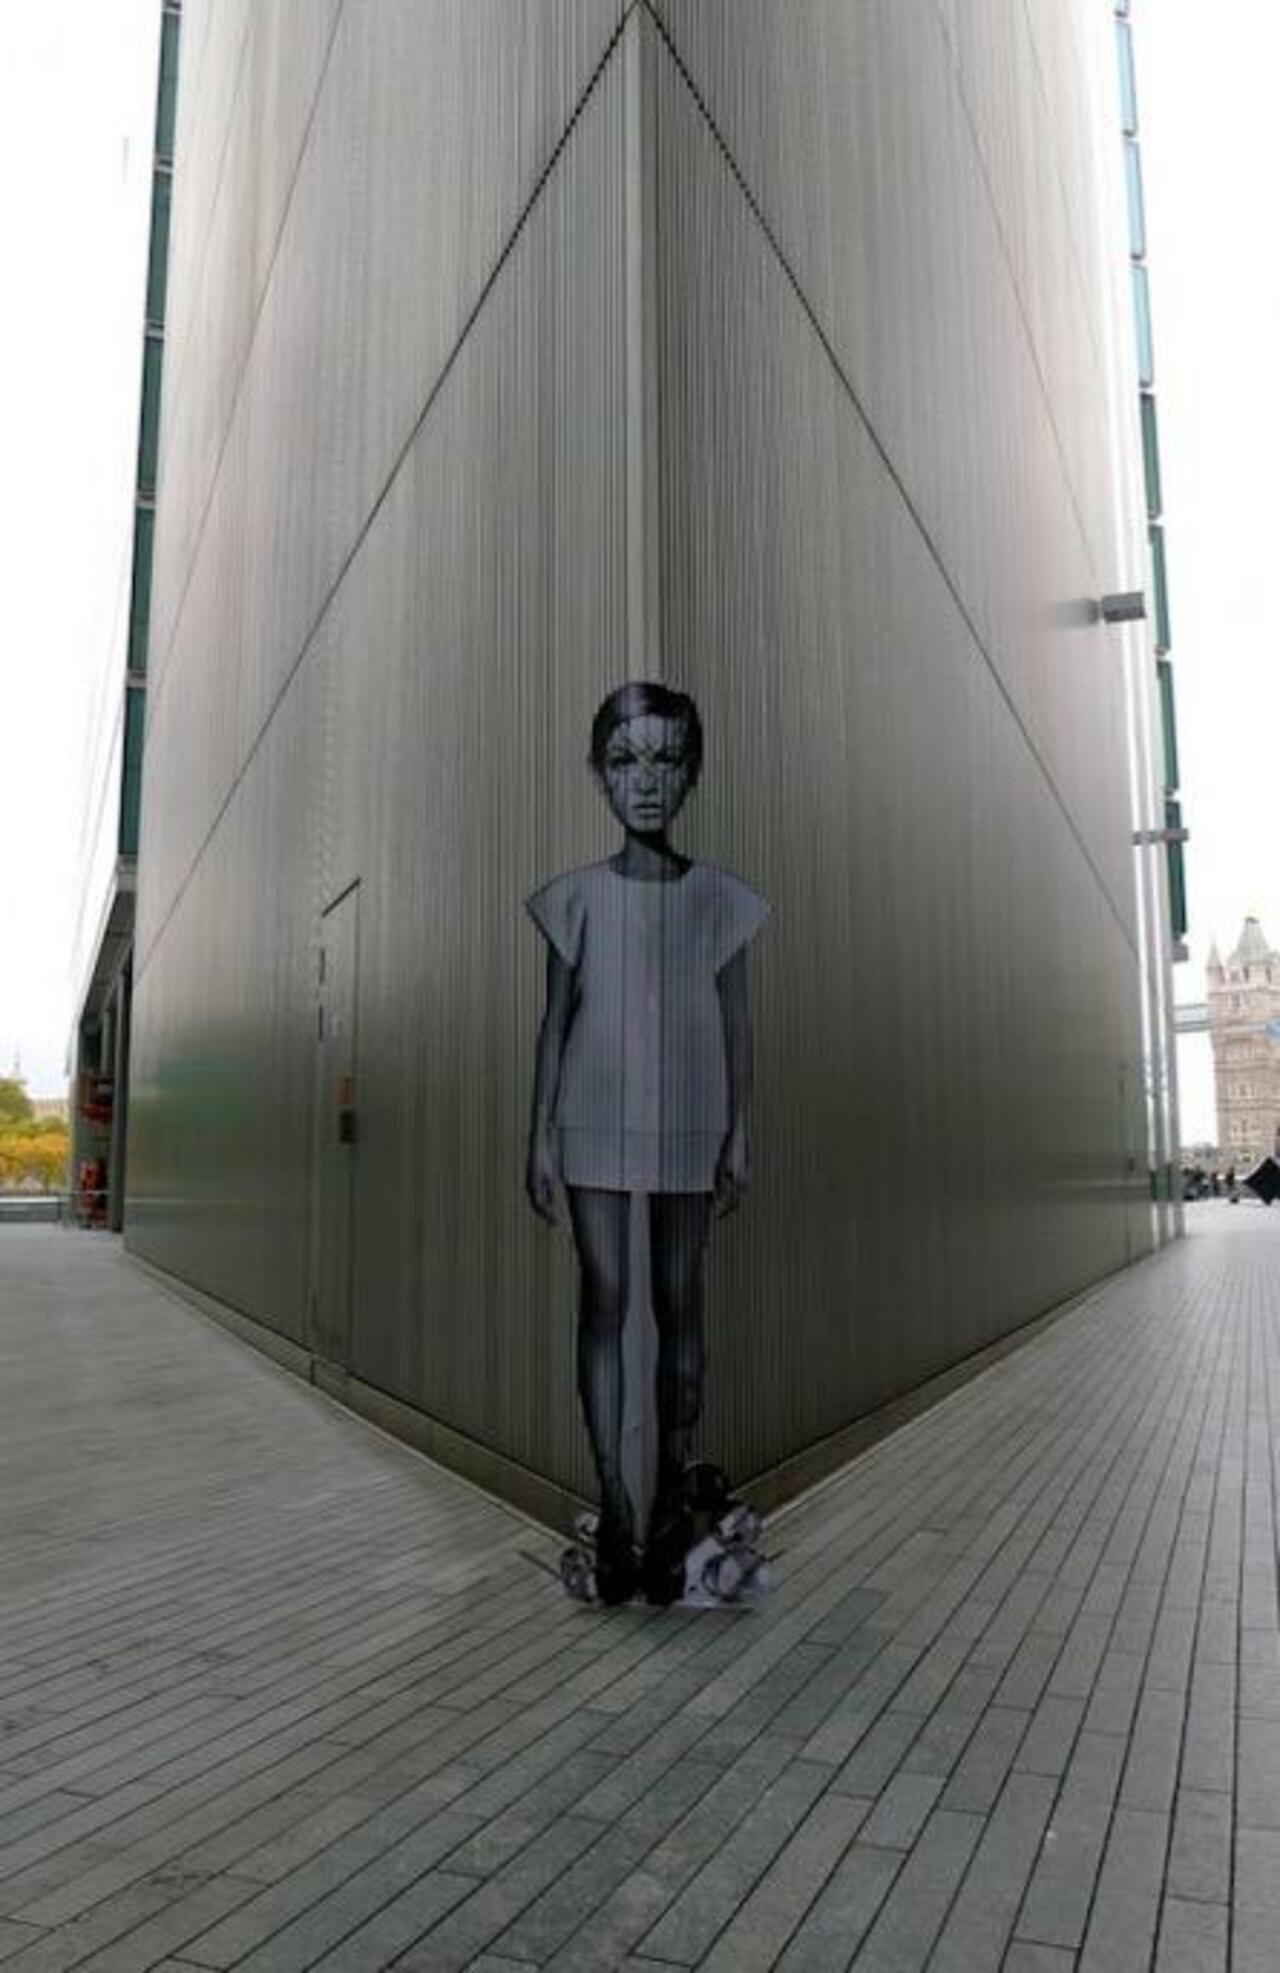 RT @richardbanfa: #switch a corner into #Streetart by #MissBigs #London #bedifferent #graffiti #arte #art http://t.co/uNy2RJwYRZ